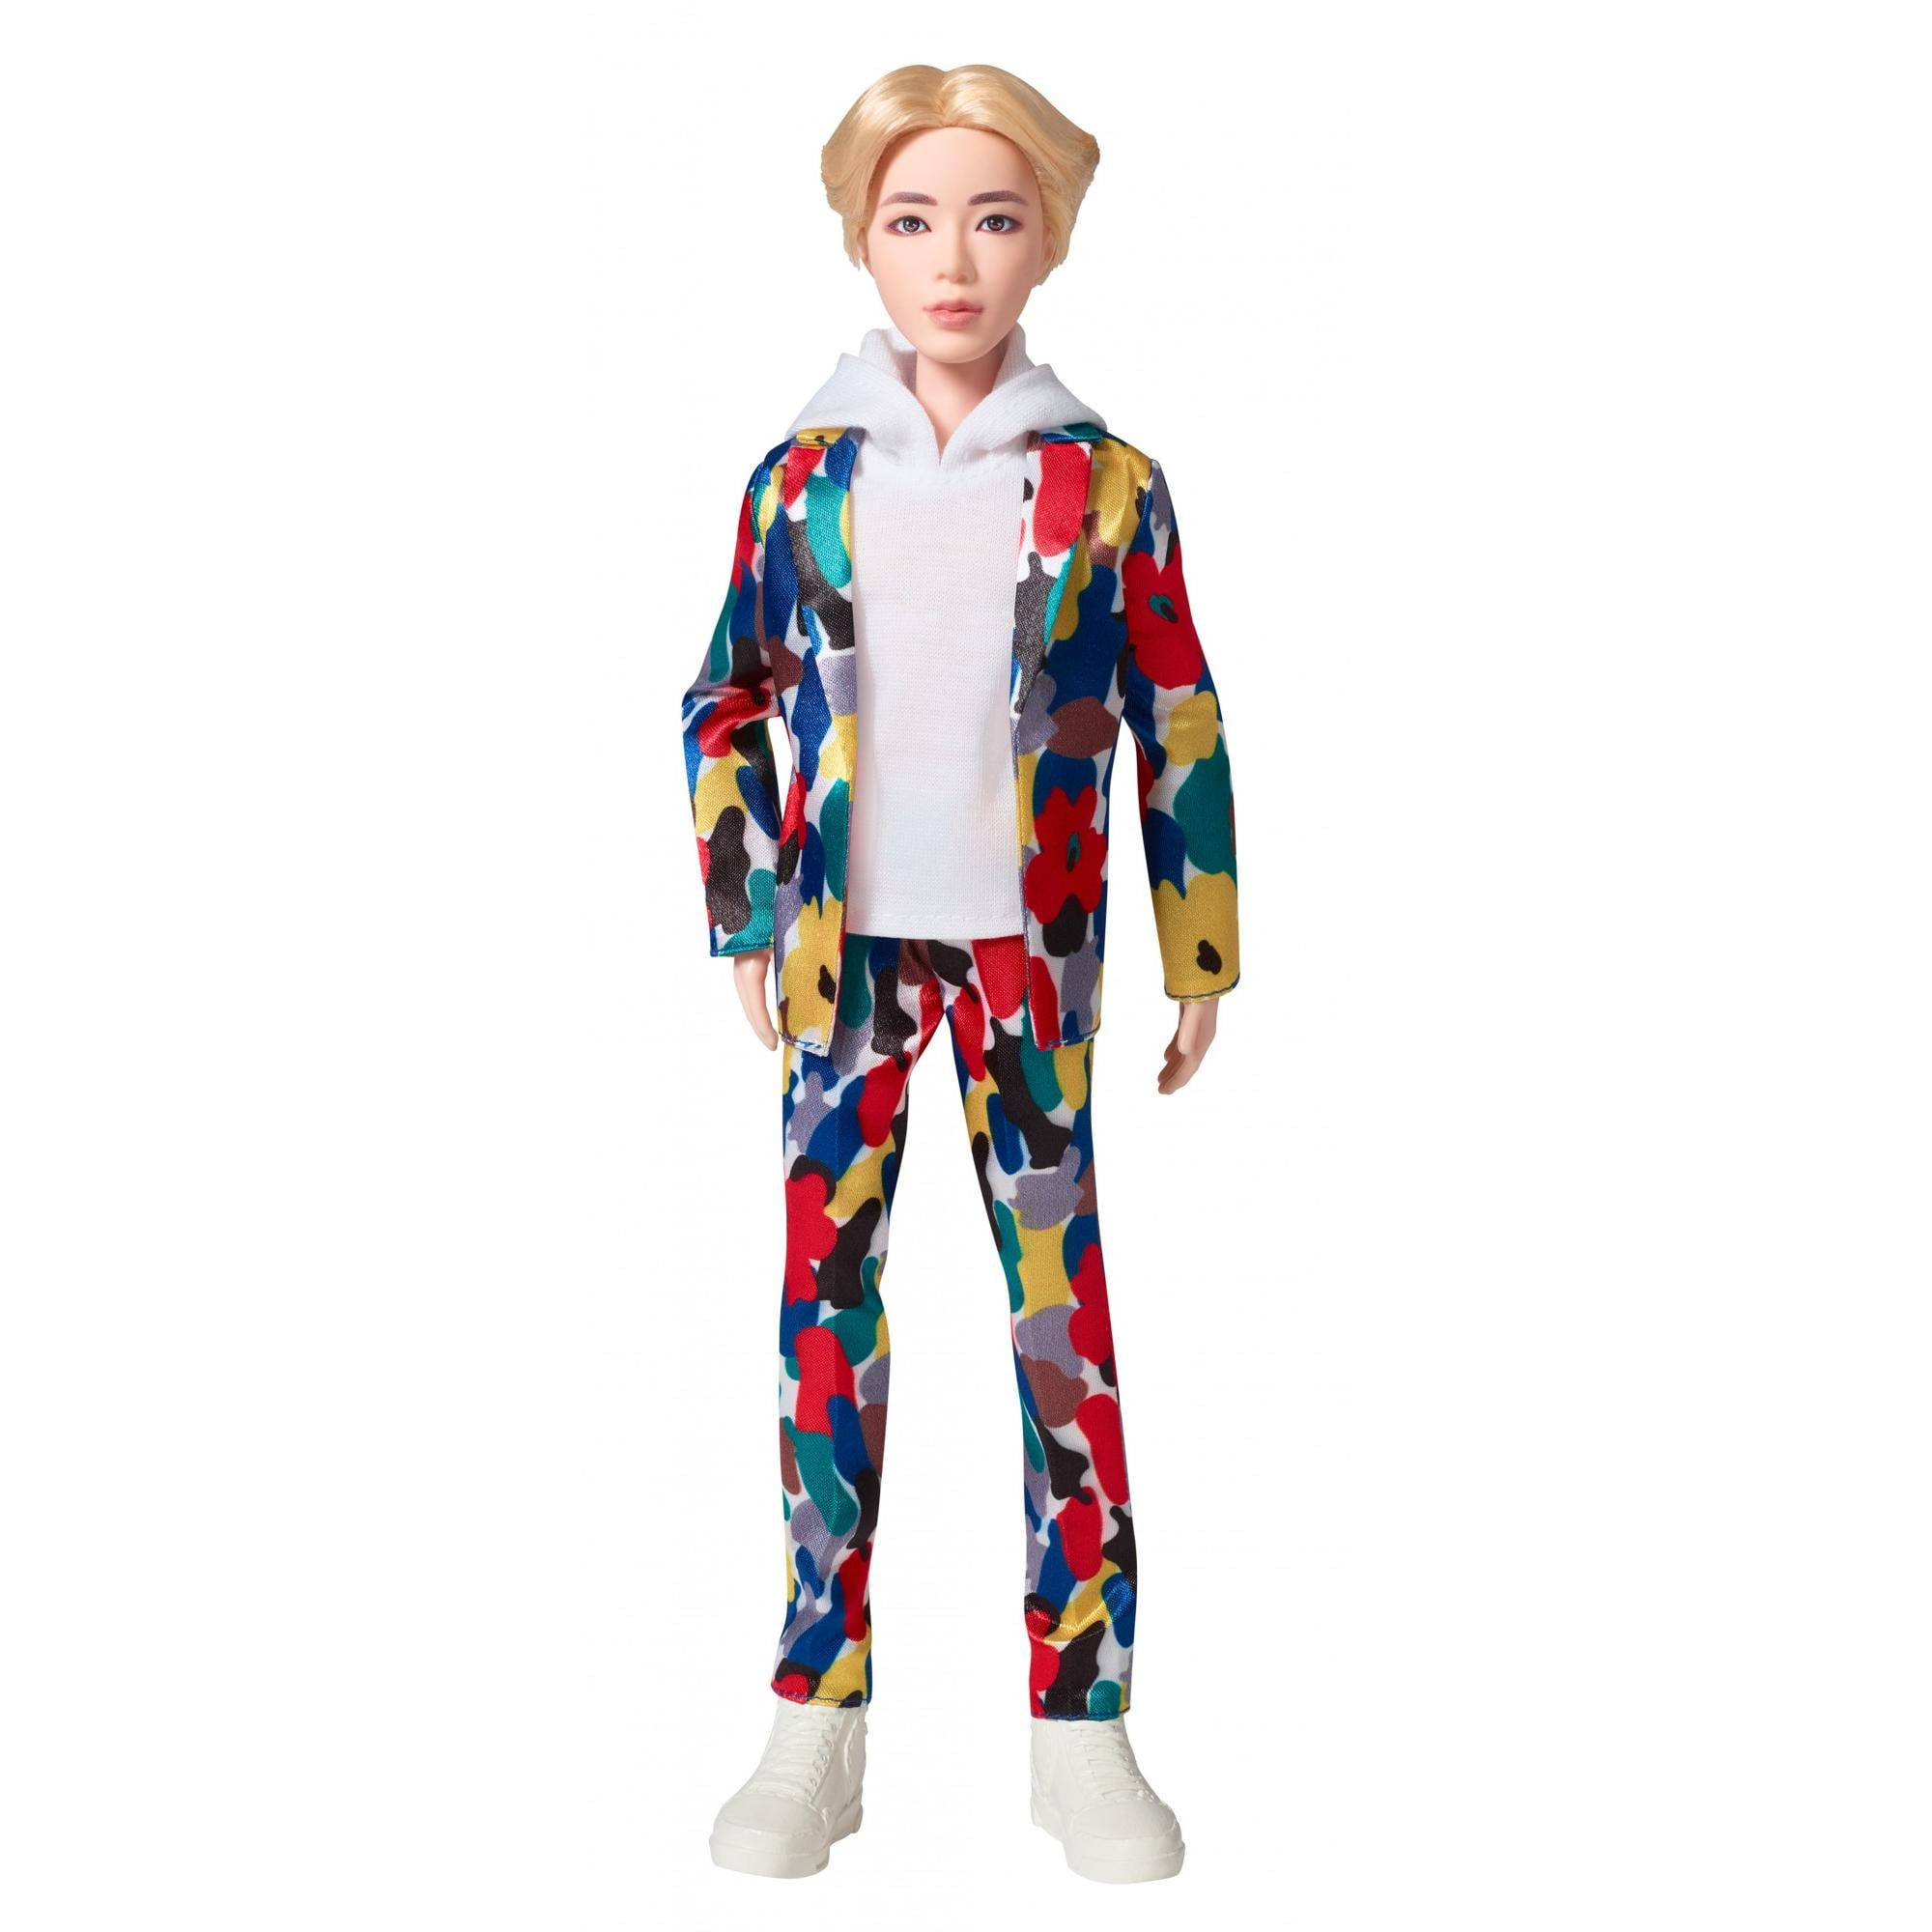 Bts Mini Idol Doll Jimin, ages 3 & up - Walmart.com